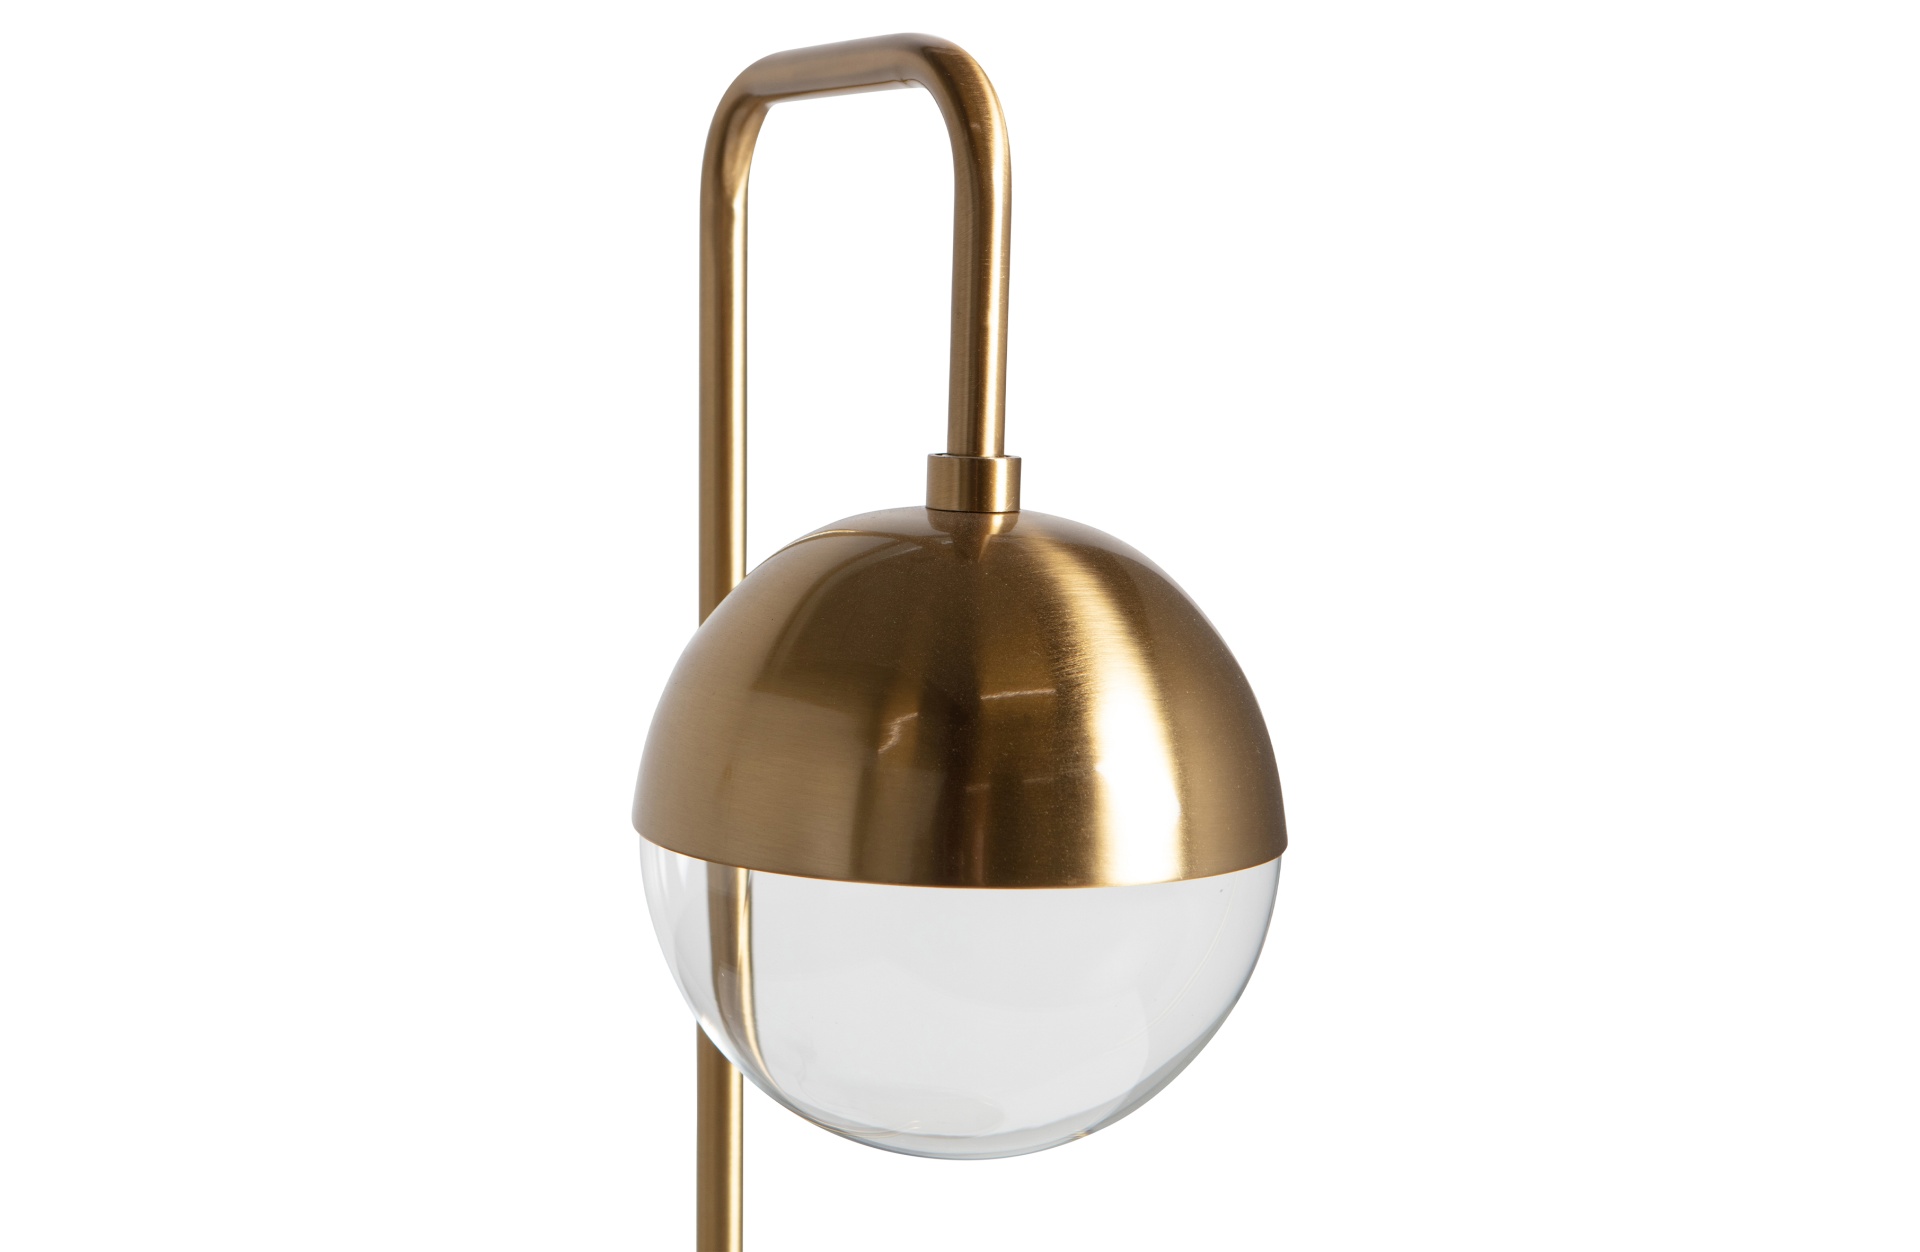 Die Stehlampe Globular ist ein echter Hingucker, gefertigt wurde sie aus Metall und Glas,welches einen Messing Farbton besitzt. Dadurch entsteht ein modernes Design.